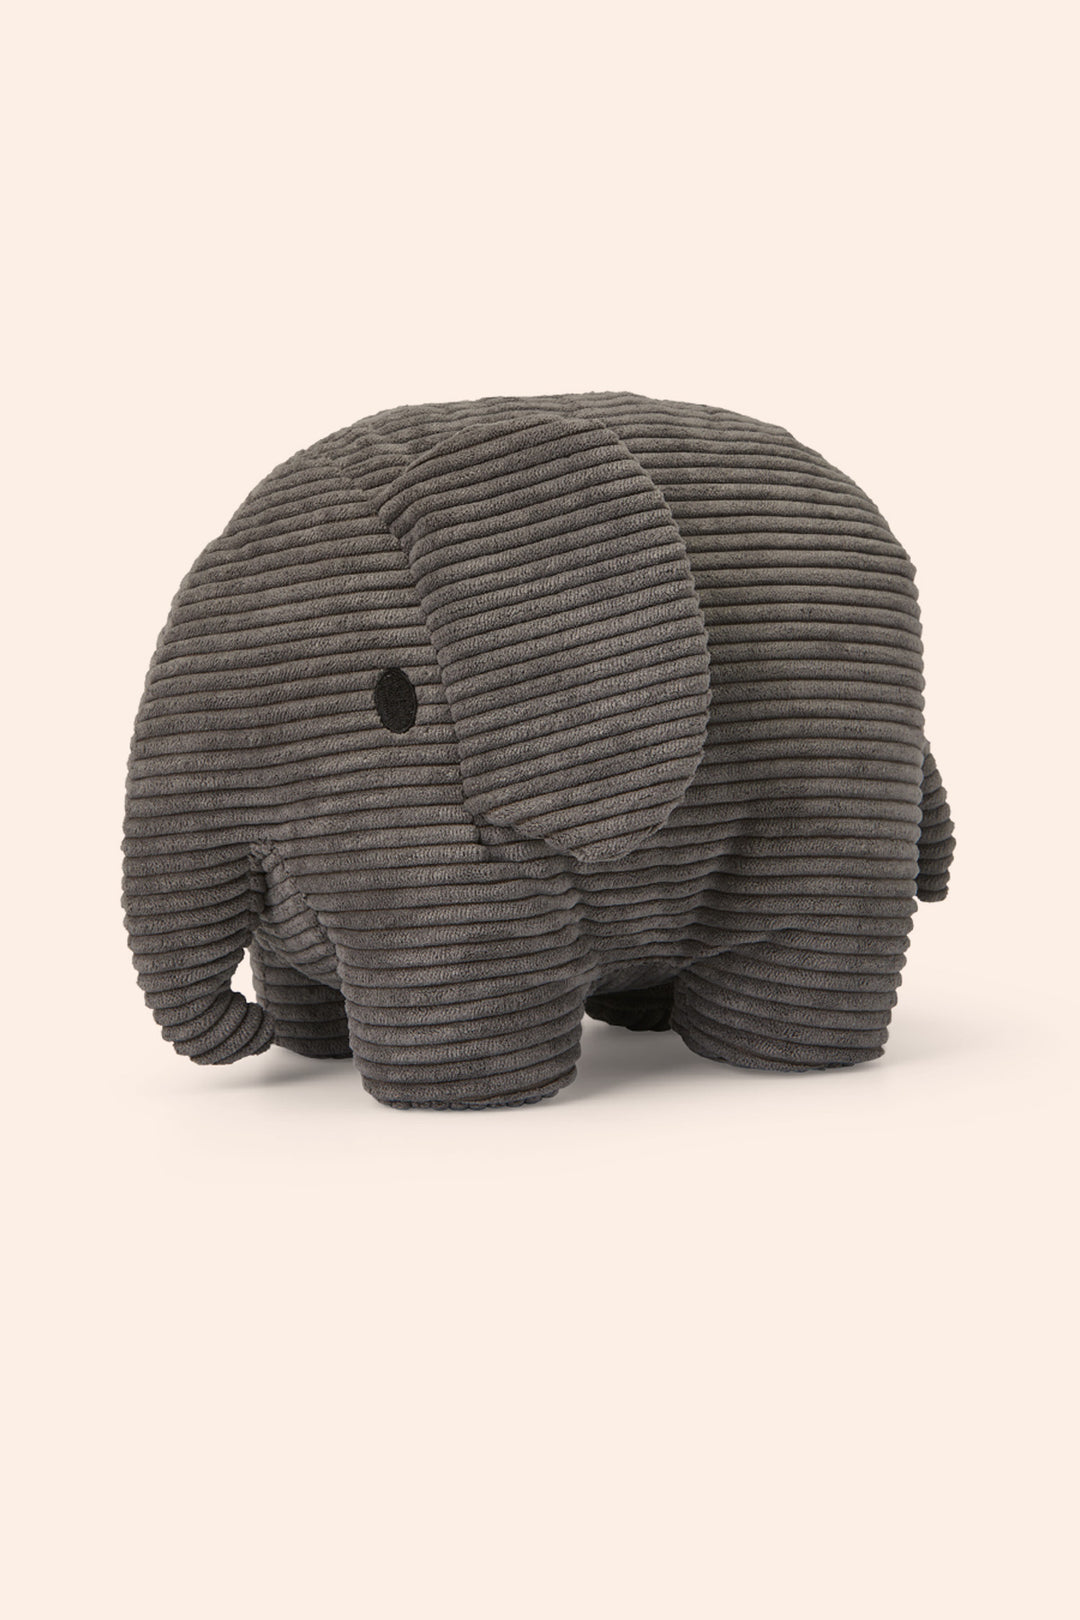 Miffy Elephant Corduroy Grey - Bon Ton Toys